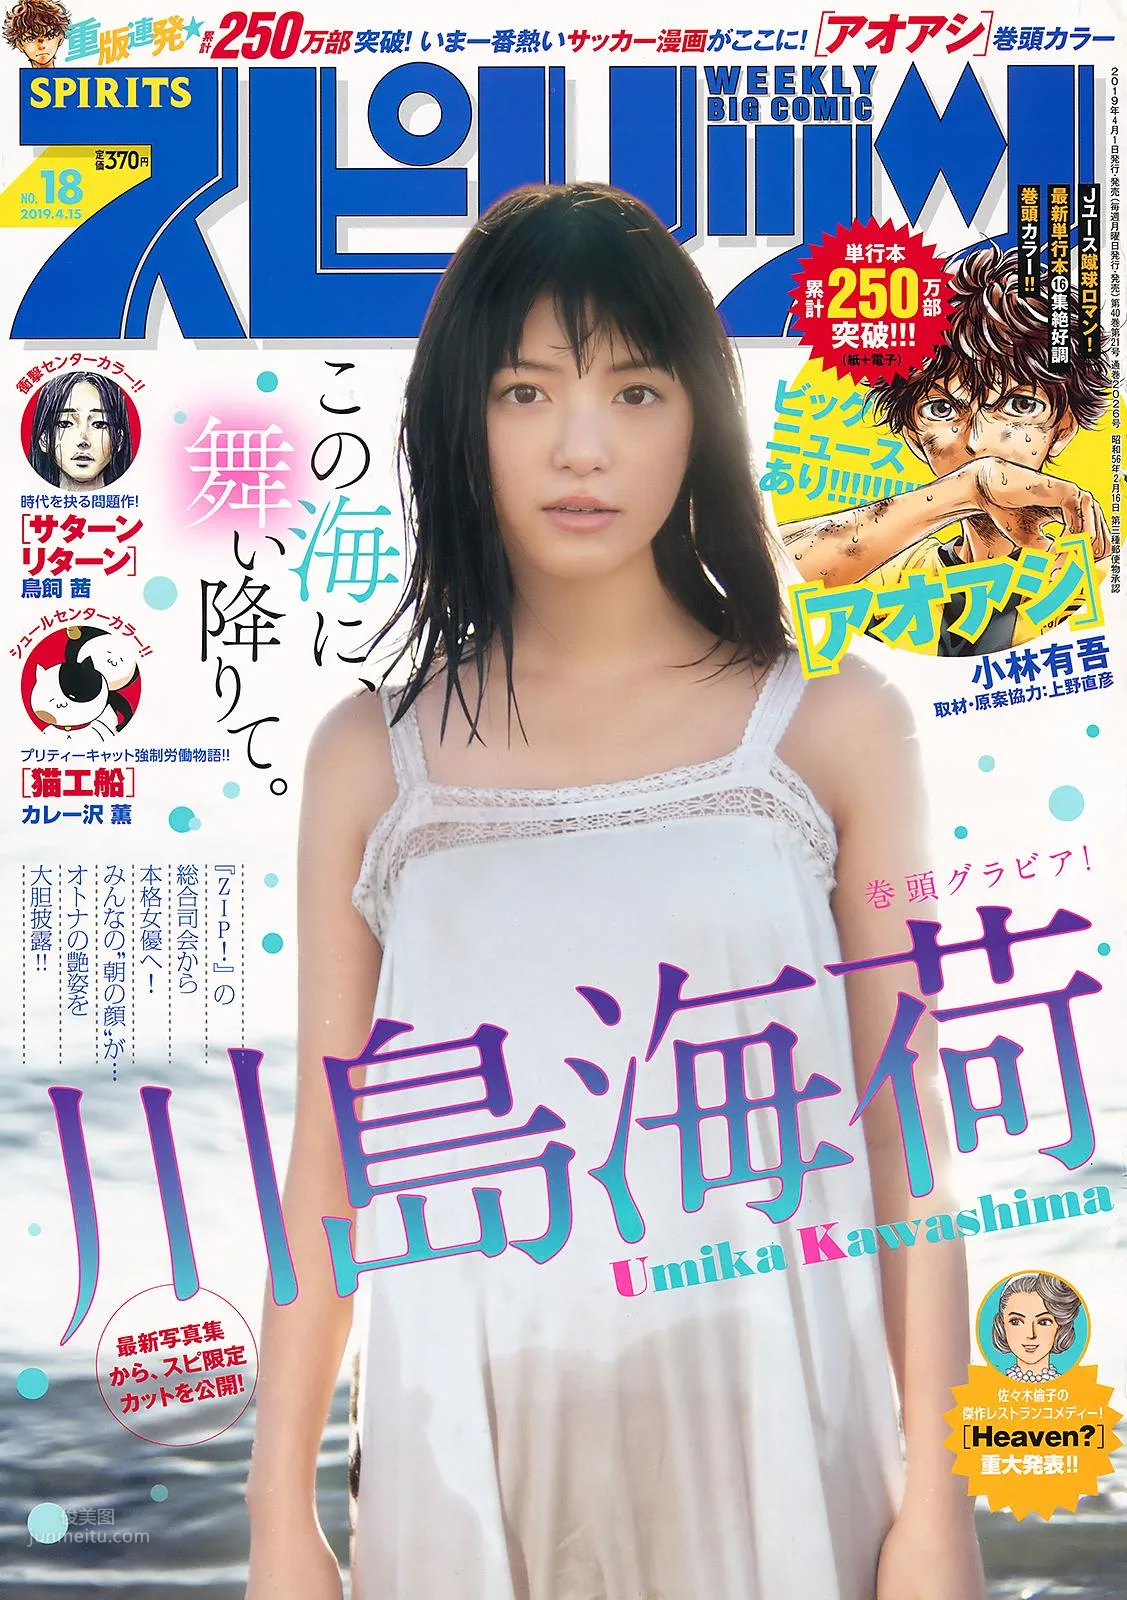 川島海荷, Umika Kawashima - Weekly Playboy, Big Comic Spirits, 2019_5